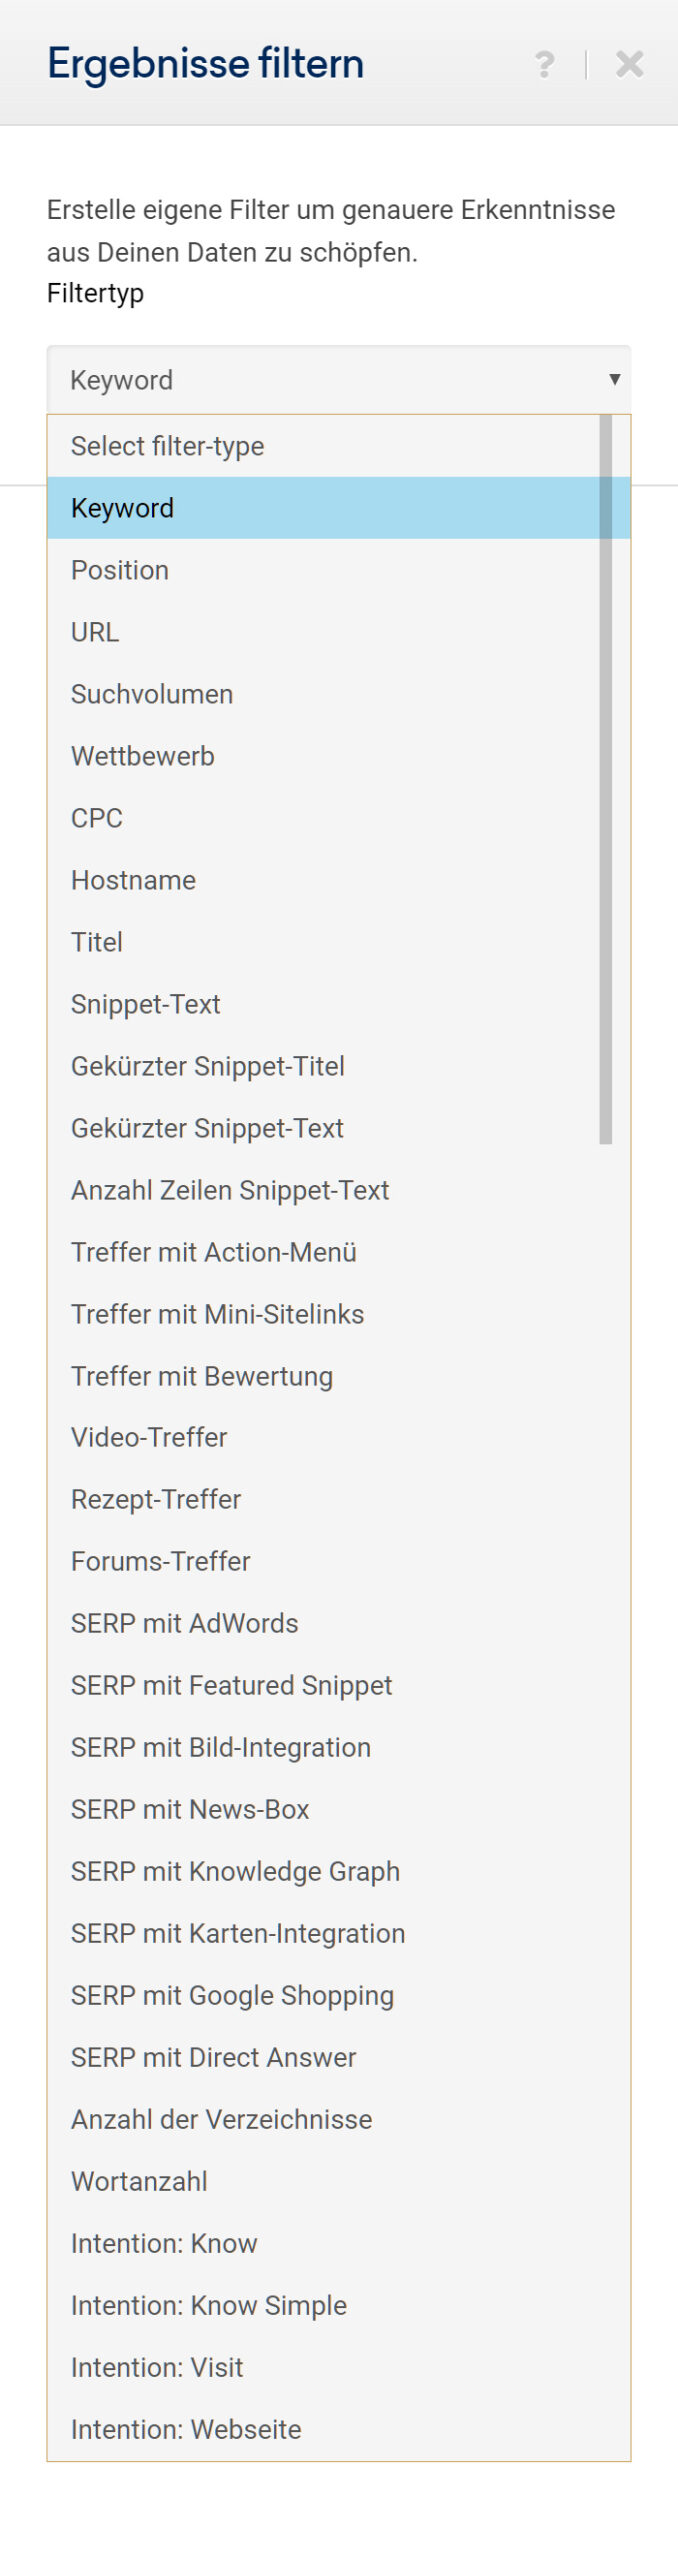 Auswahl mit allen Filter-Möglichkeiten in der Keyword-Tabelle der SISTRIX Toolbox.